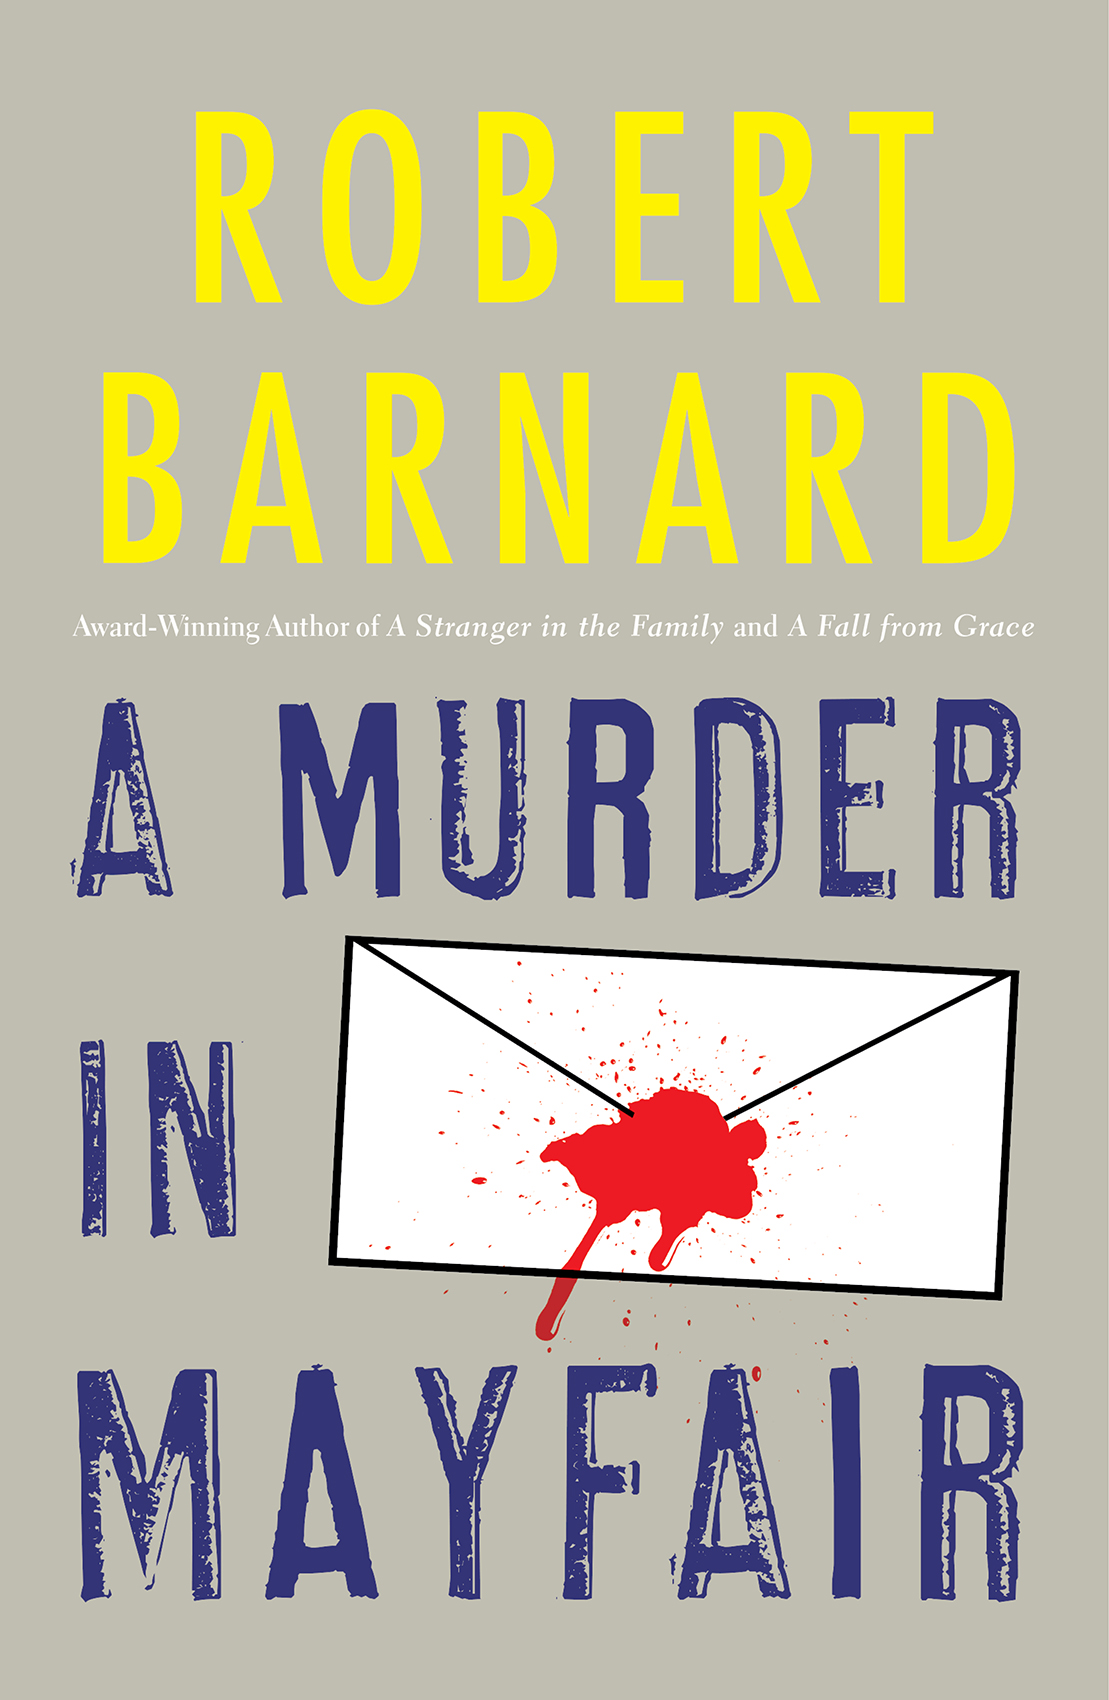 A Murder in Mayfair by Robert Barnard